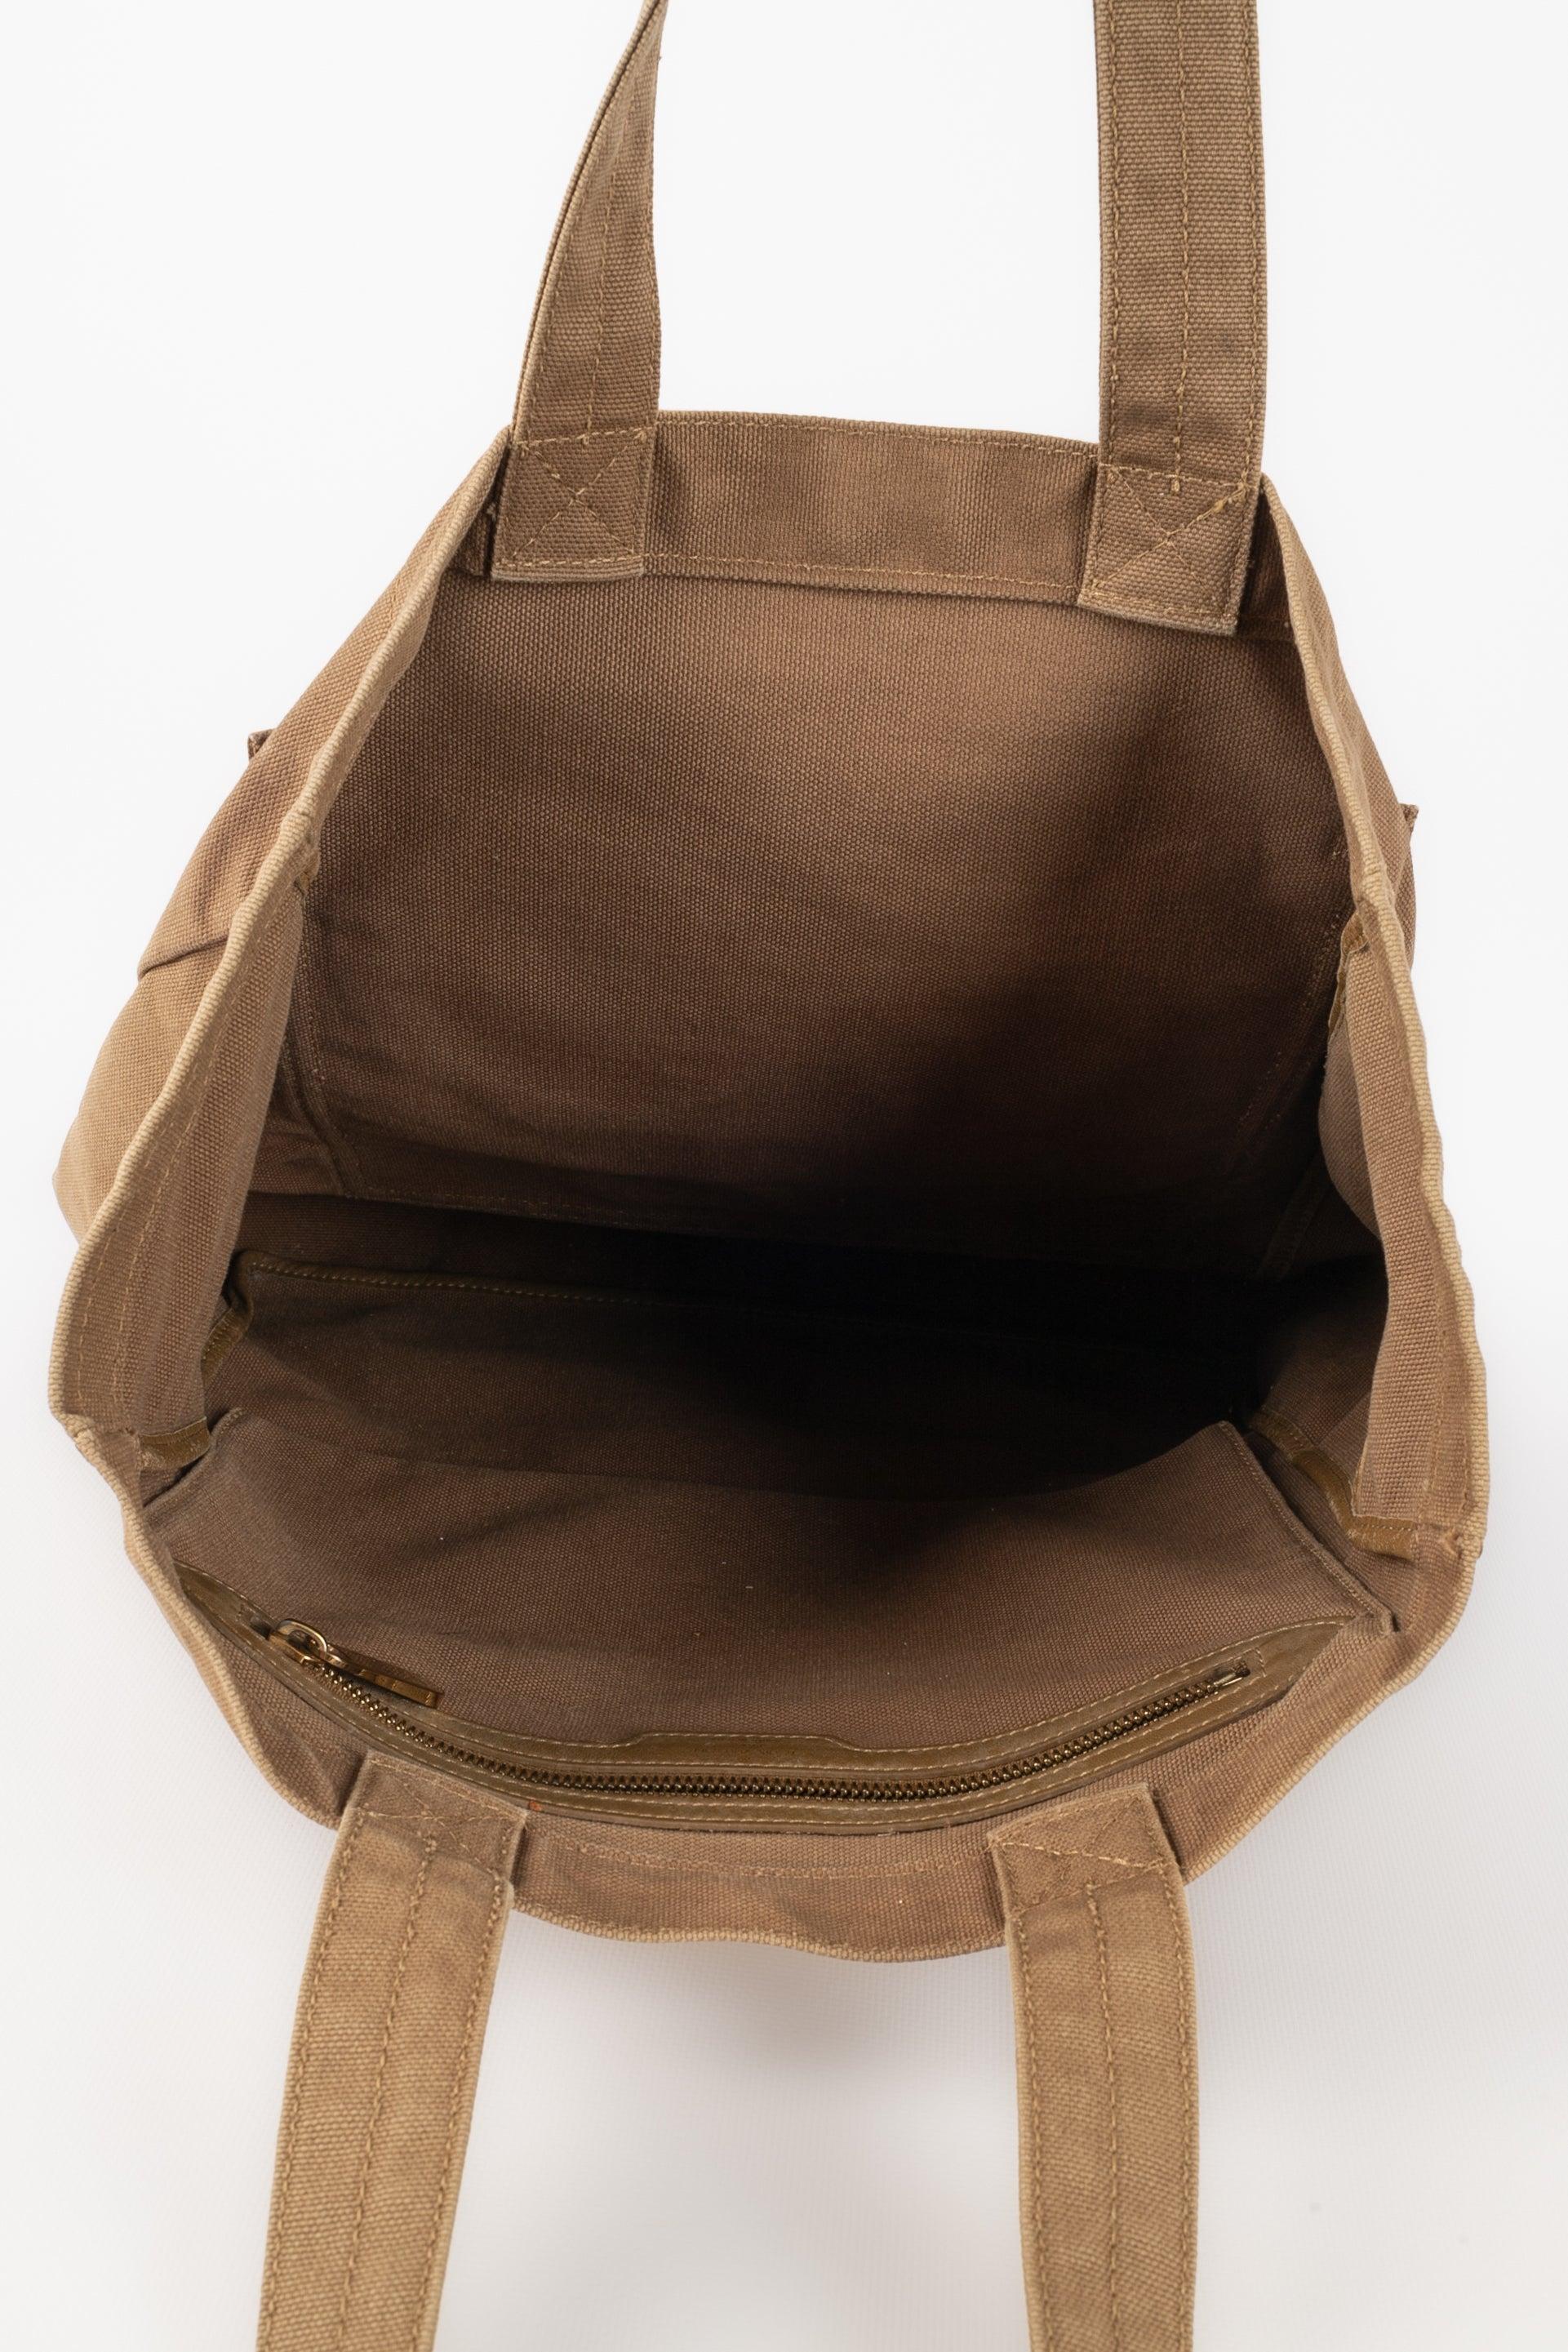 Louis Vuitton Khaki Canvas Bag, 2007 For Sale 3